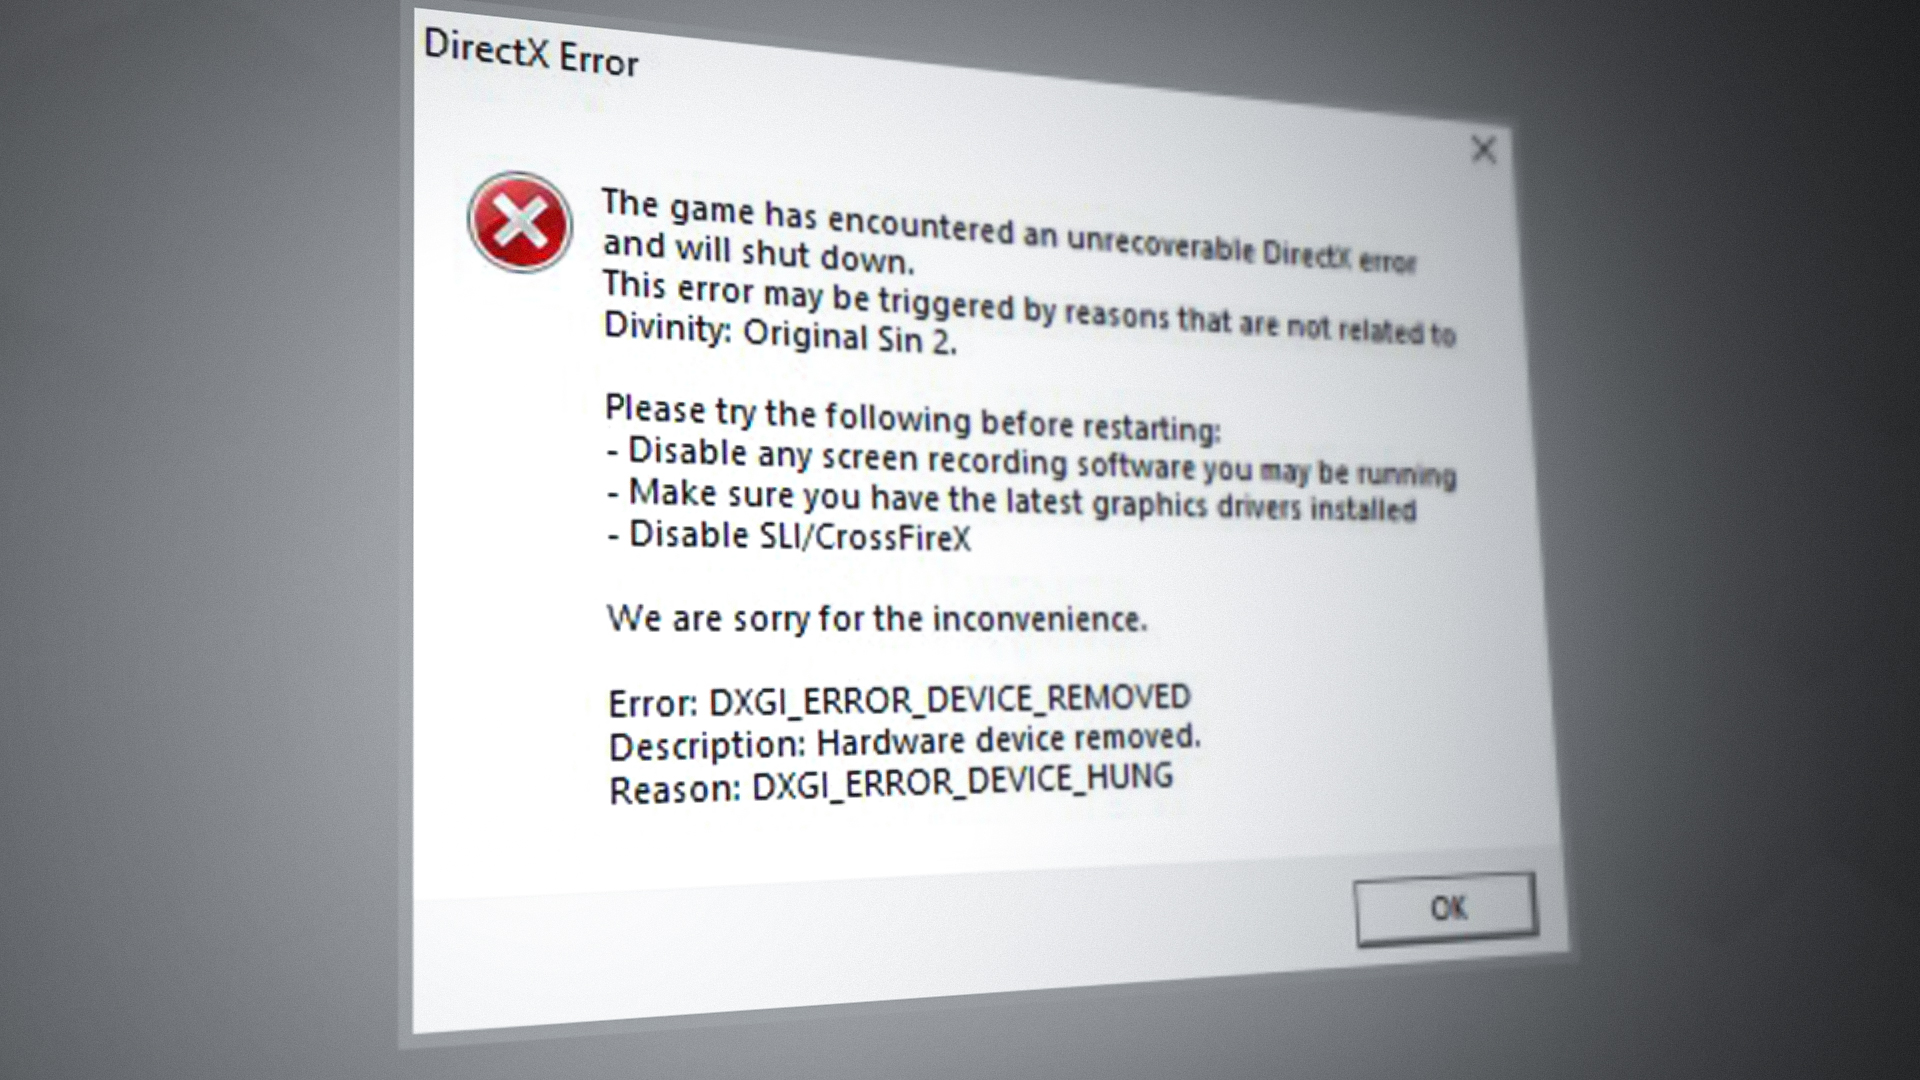 How to Fix DirectX Error in Divinity Original Sin 2?